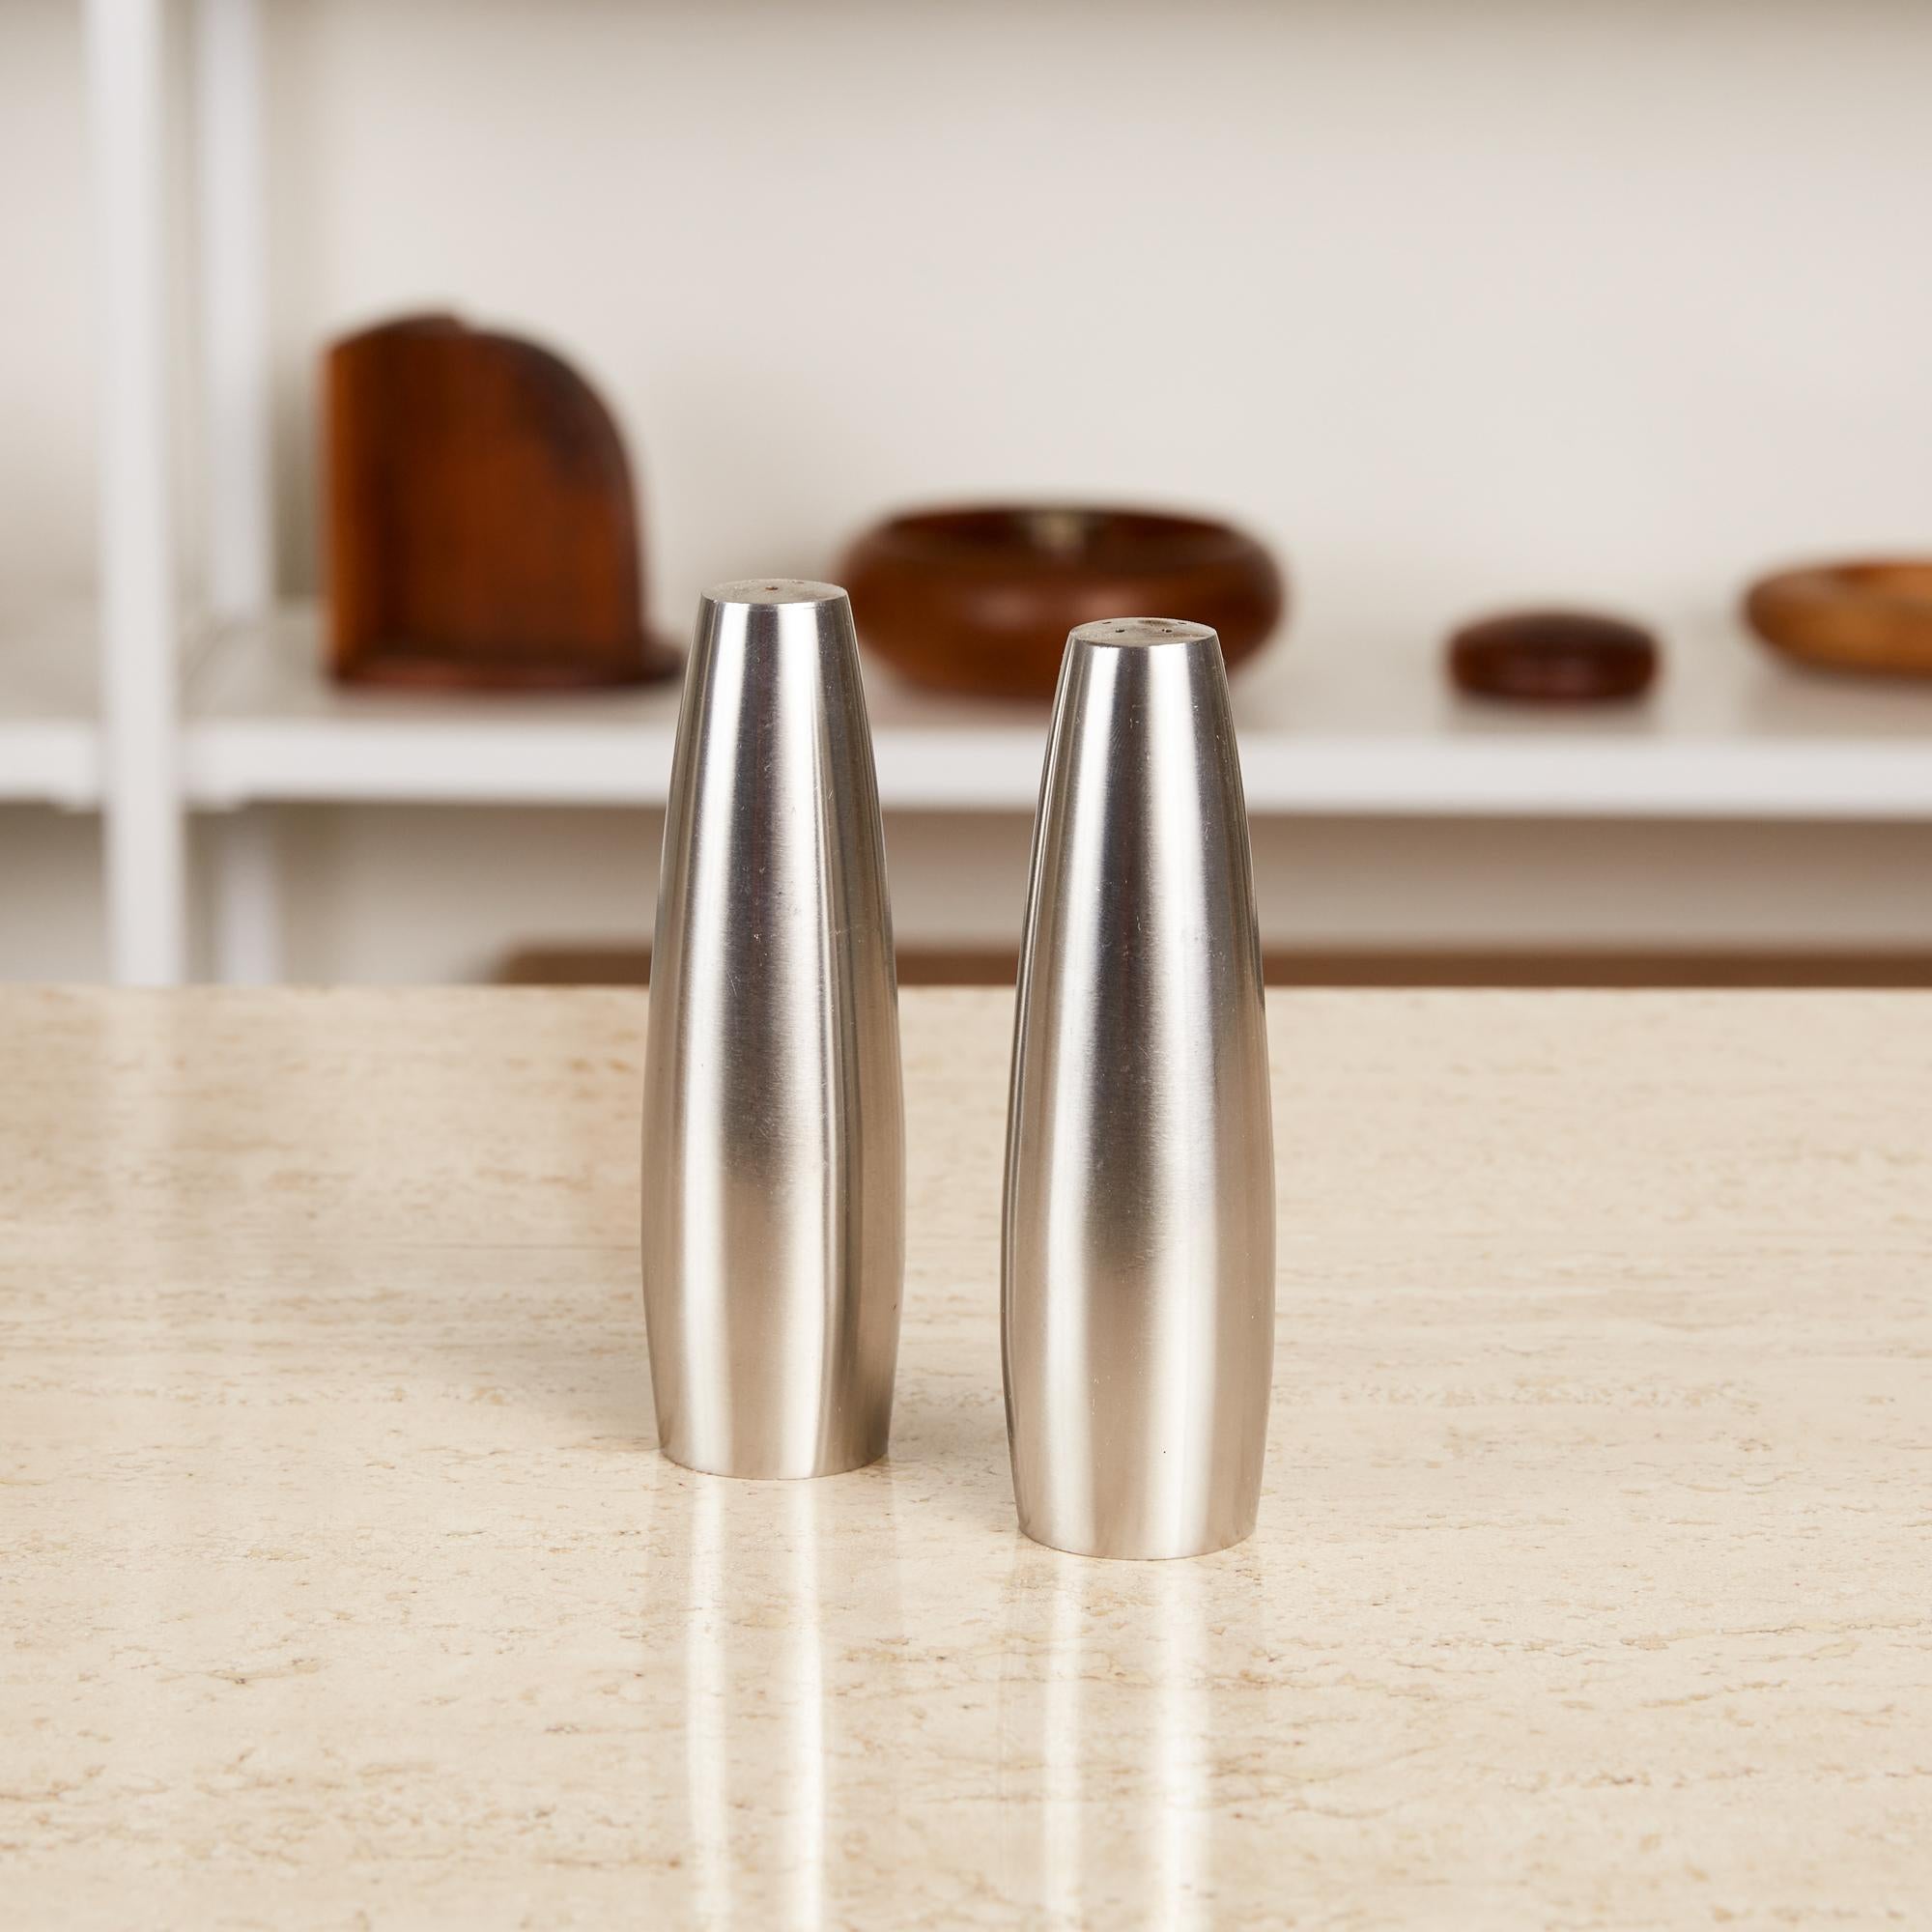 Paar Salz- und Pfefferstreuer von Jens Harald Quistgaard für Dansk, Dänemark, ca. 1960er Jahre. Die Minimalist Shaker haben eine konisch zulaufende zylindrische Form aus gebürstetem Edelstahl. Um Salz und Pfeffer bei der Verwendung zu unterscheiden,